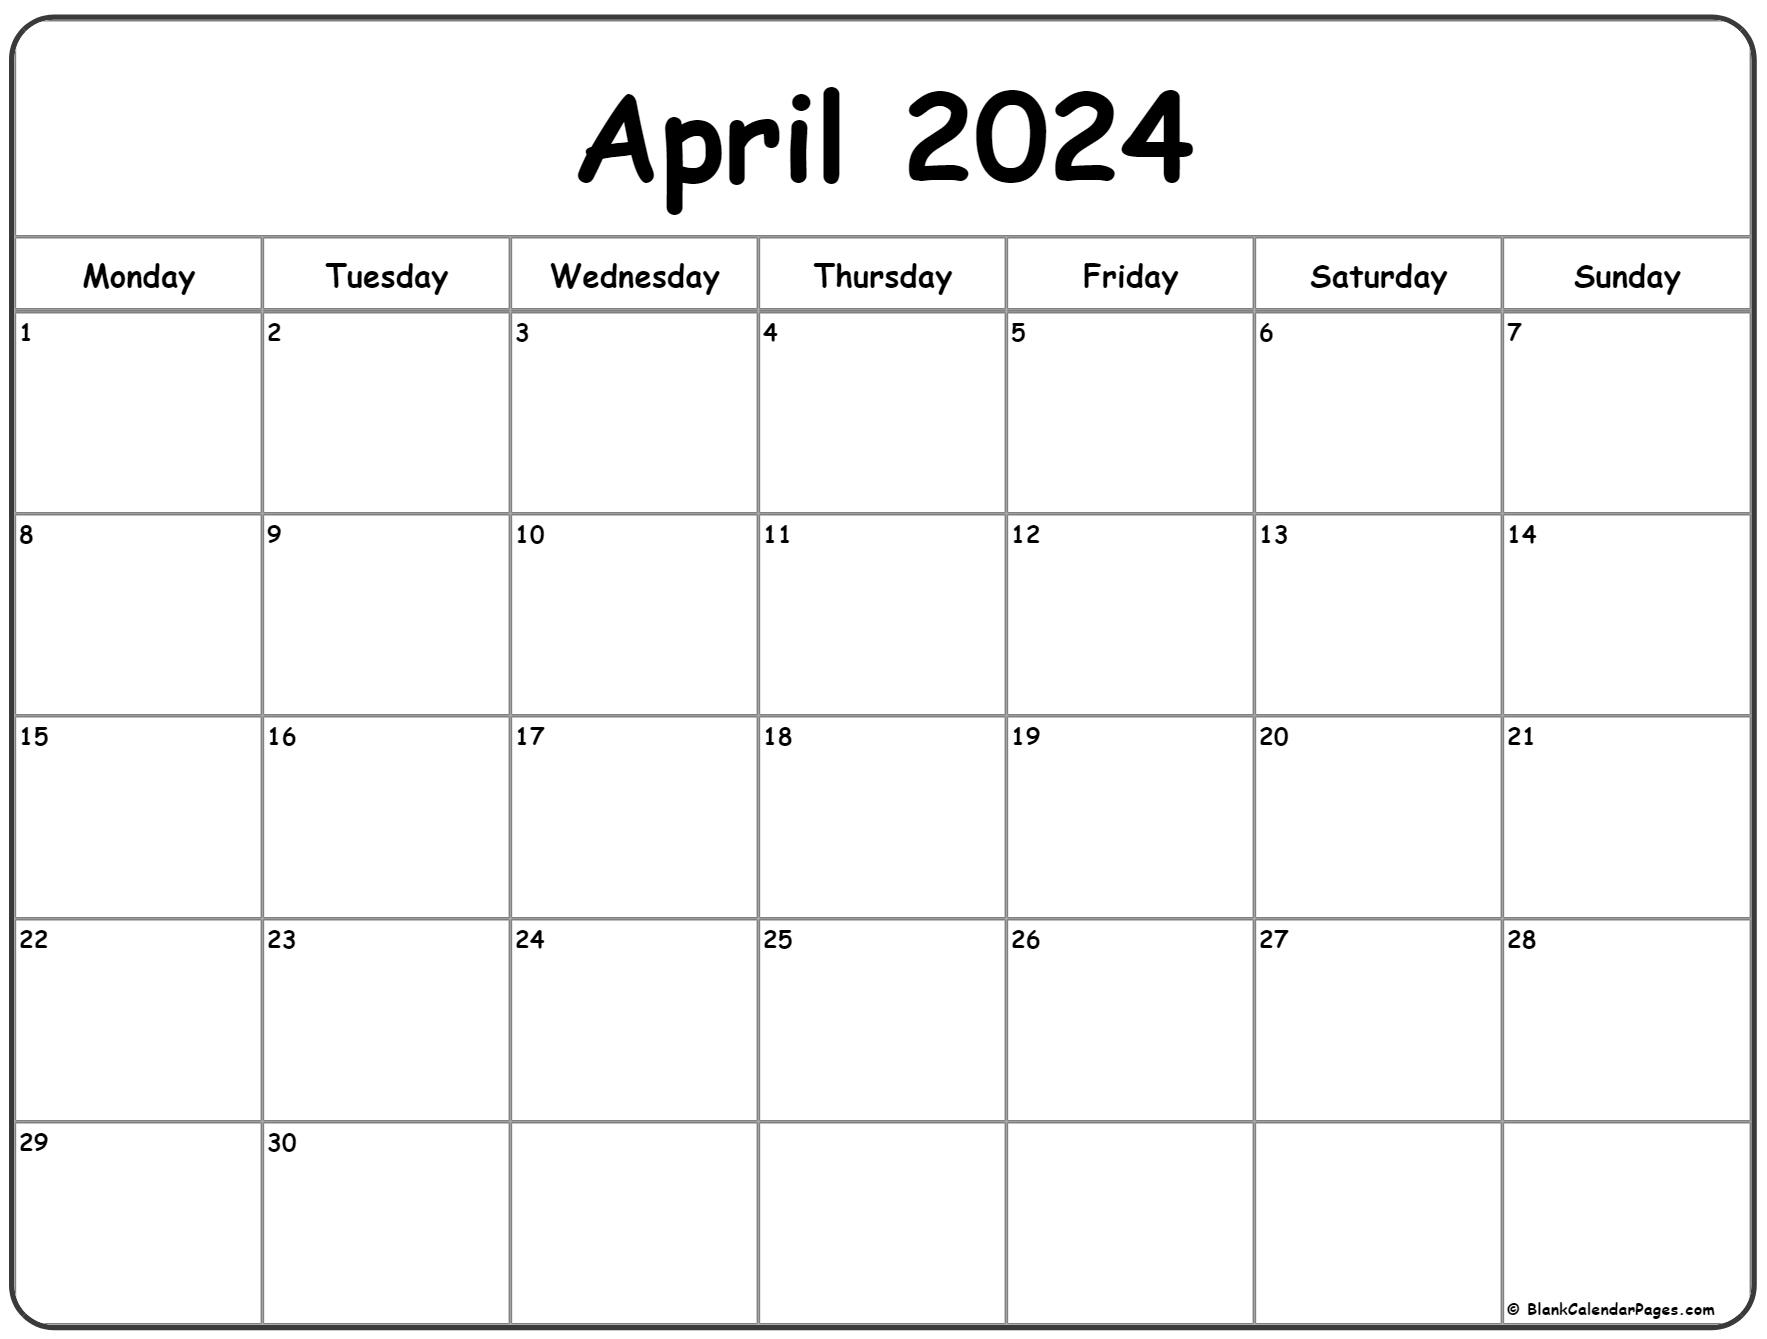 April 2024 Monday Calendar | Monday To Sunday for Calendar April 2024 Printable